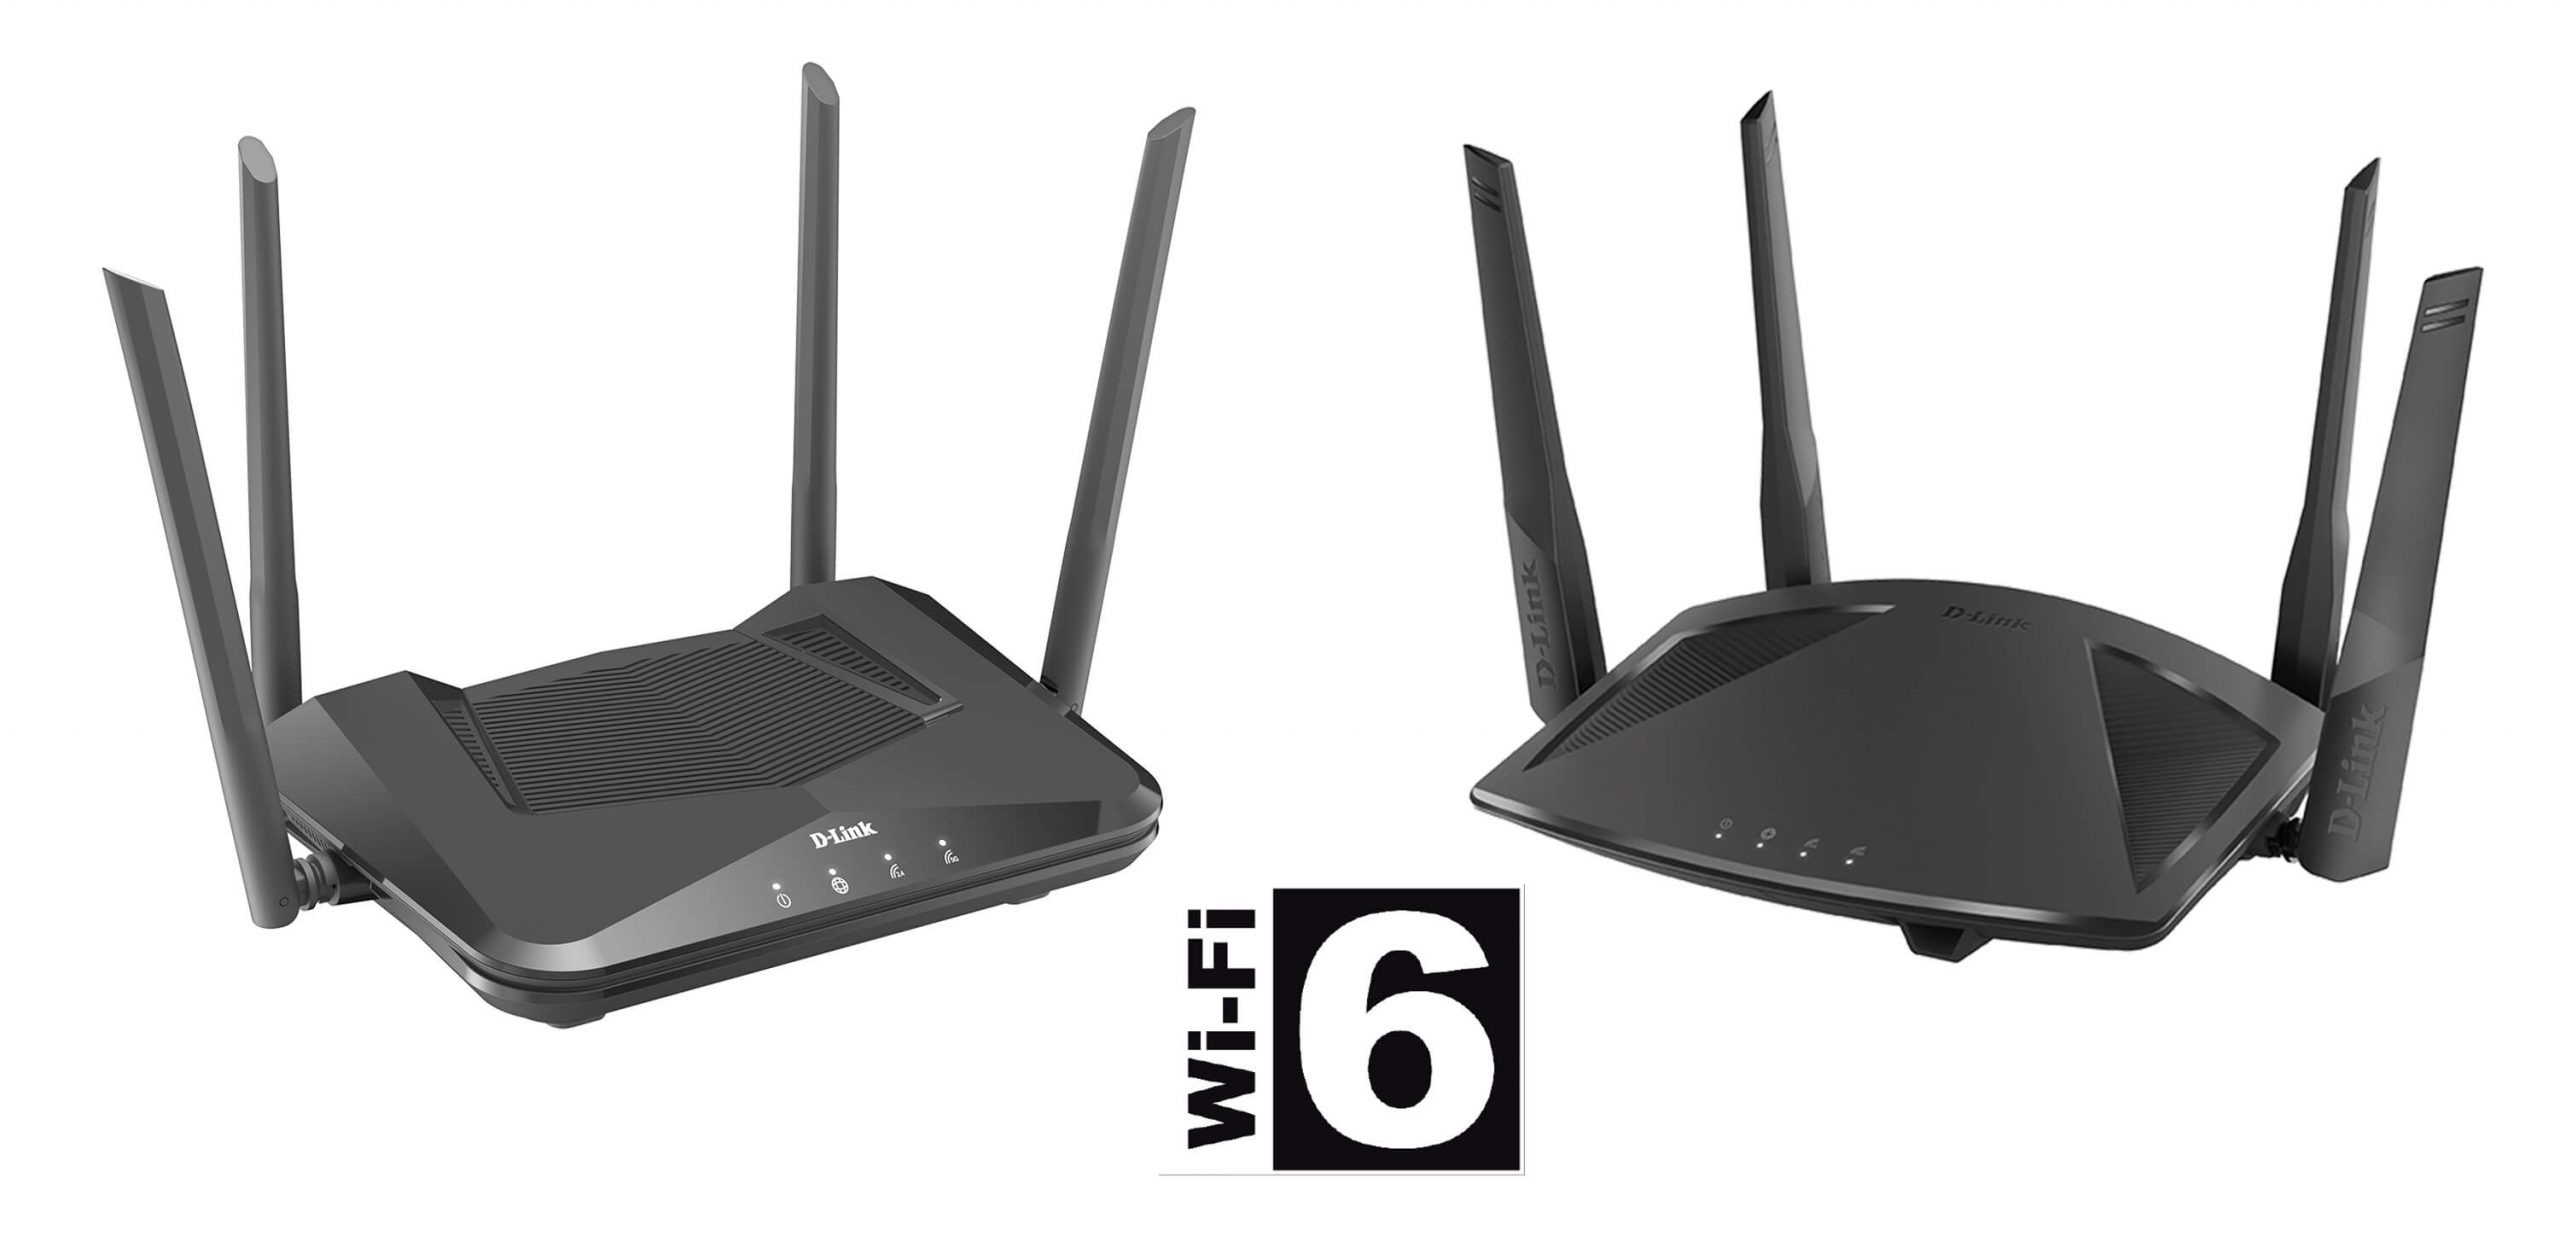 D-Link facilita el salto a Wi-Fi 6 con nueva gama de routers